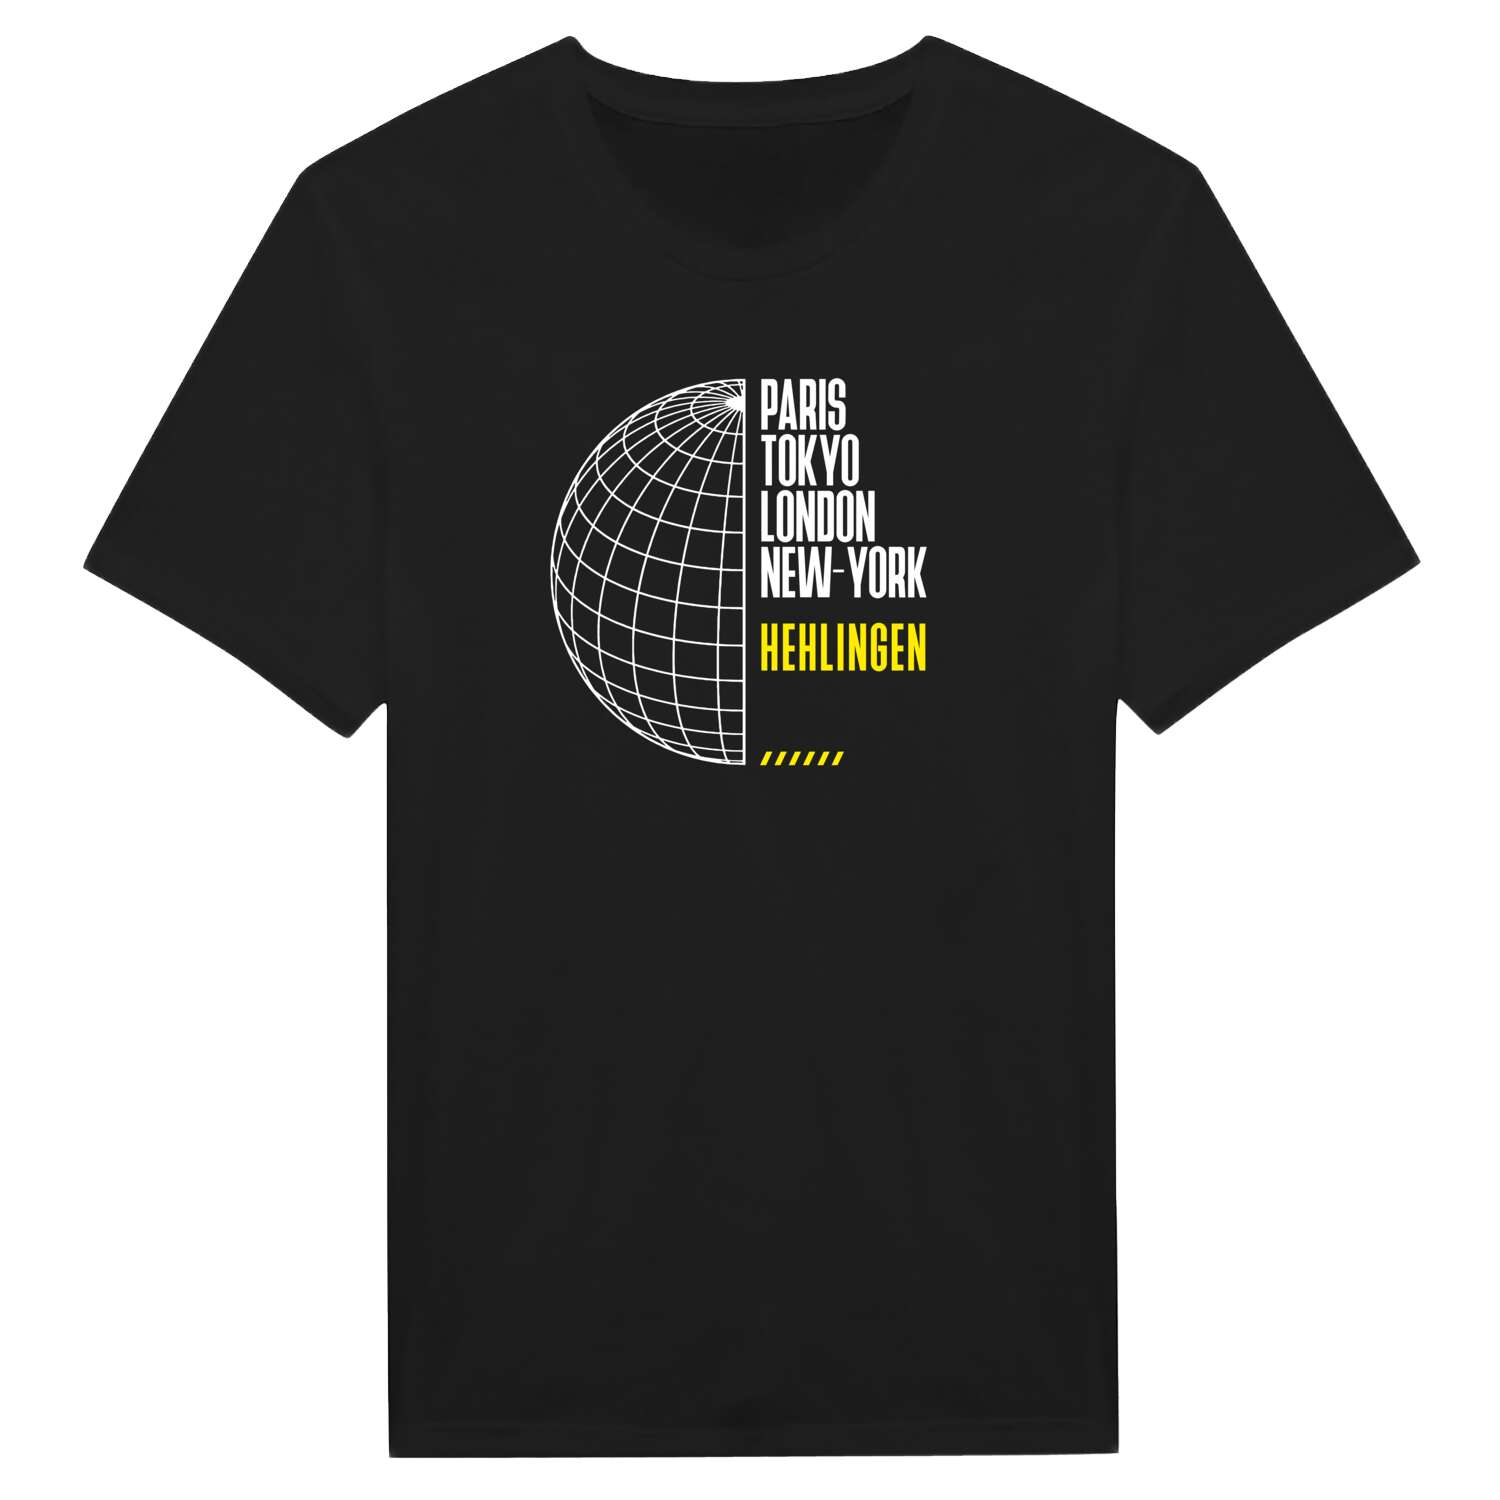 Hehlingen T-Shirt »Paris Tokyo London«